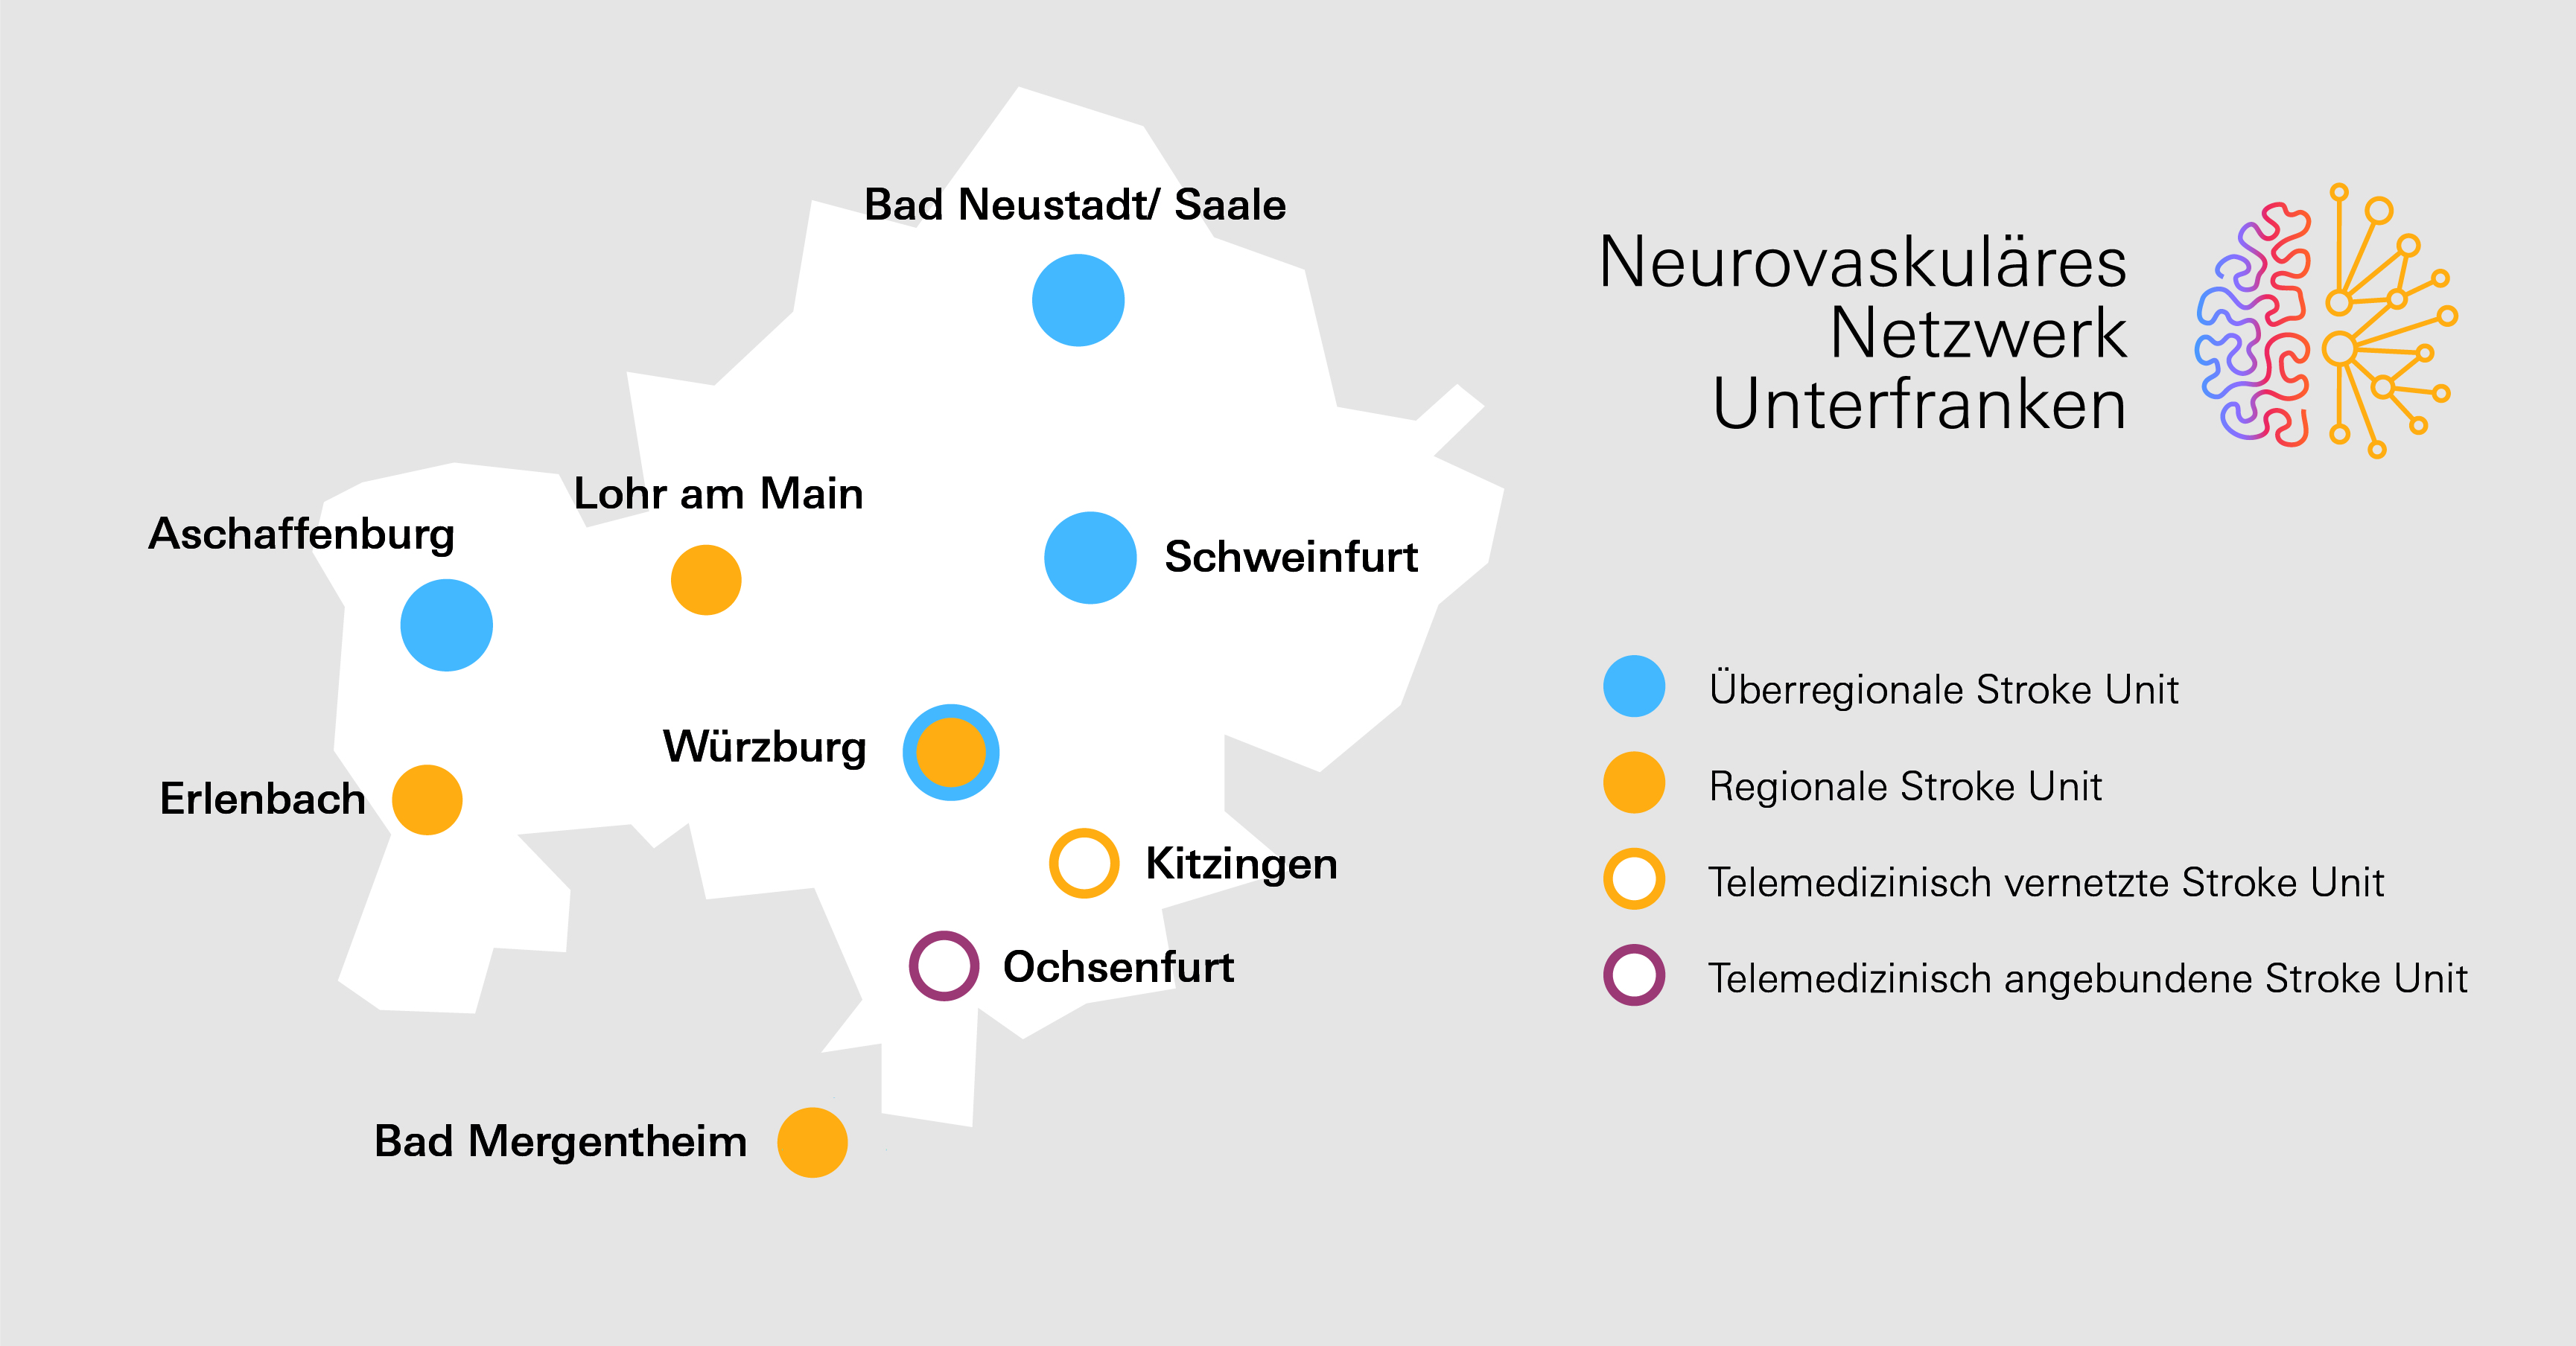 Am Neurovaskulären Netzwerk Unterfranken beteiligte Kliniken in der Region.